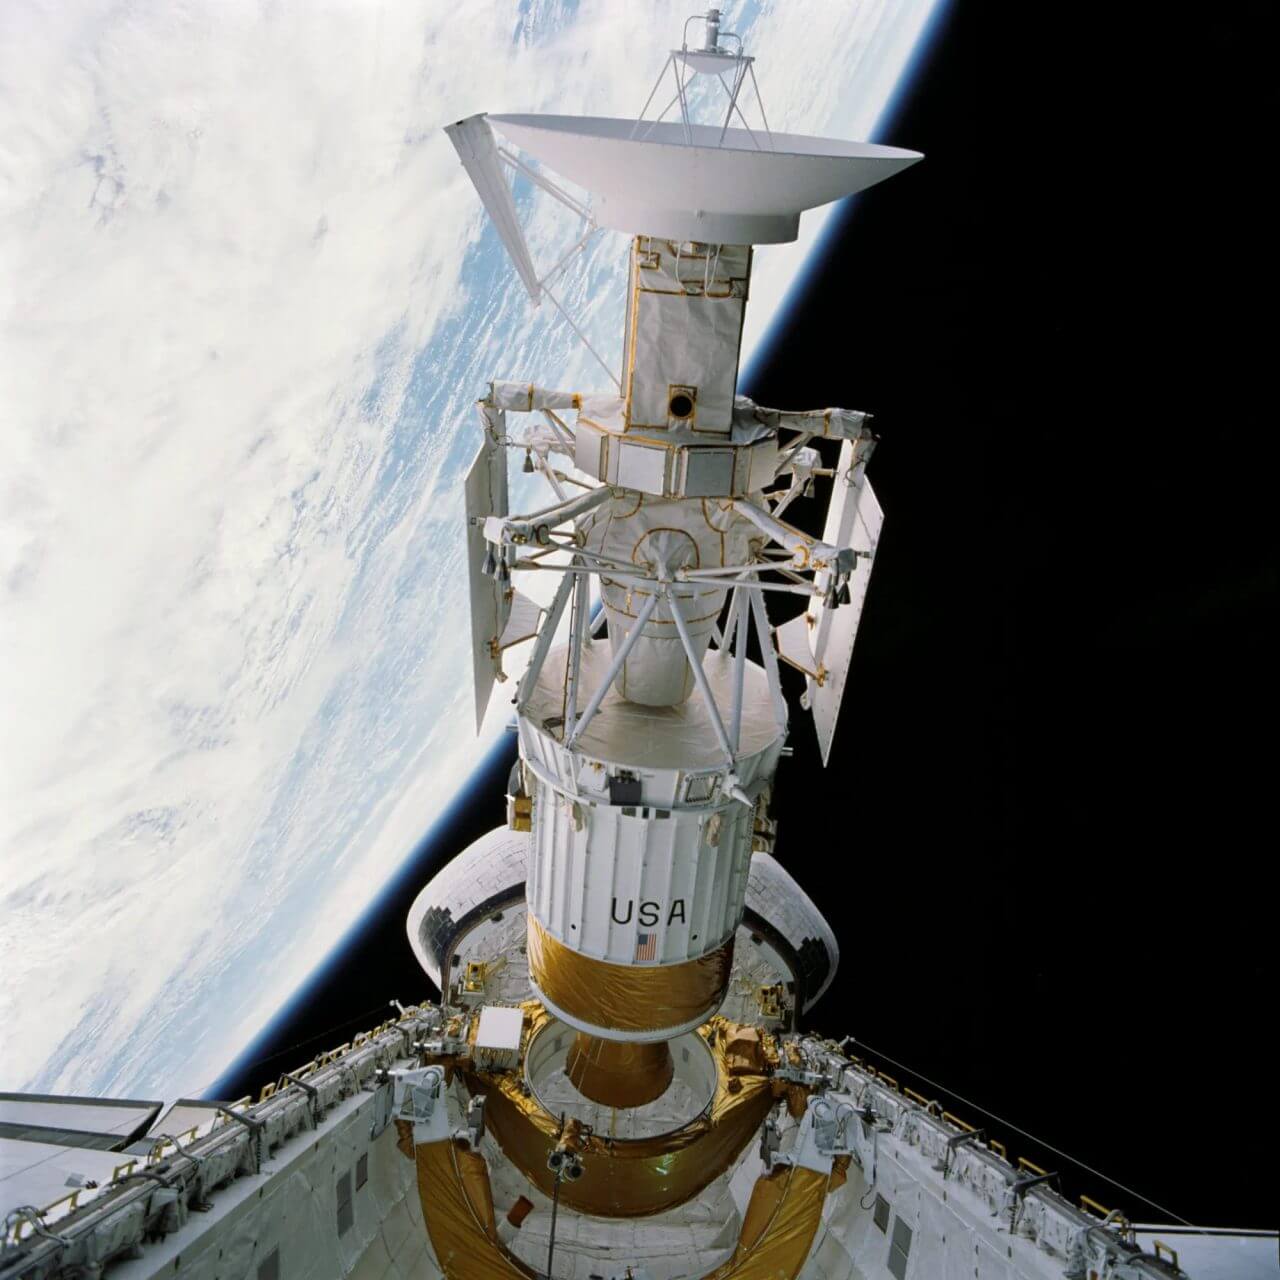 【▲ 図2: スペースシャトル「アトランティス」によるSTS-30ミッションで放出される金星探査機「マゼラン」。（Credit: NASA）】